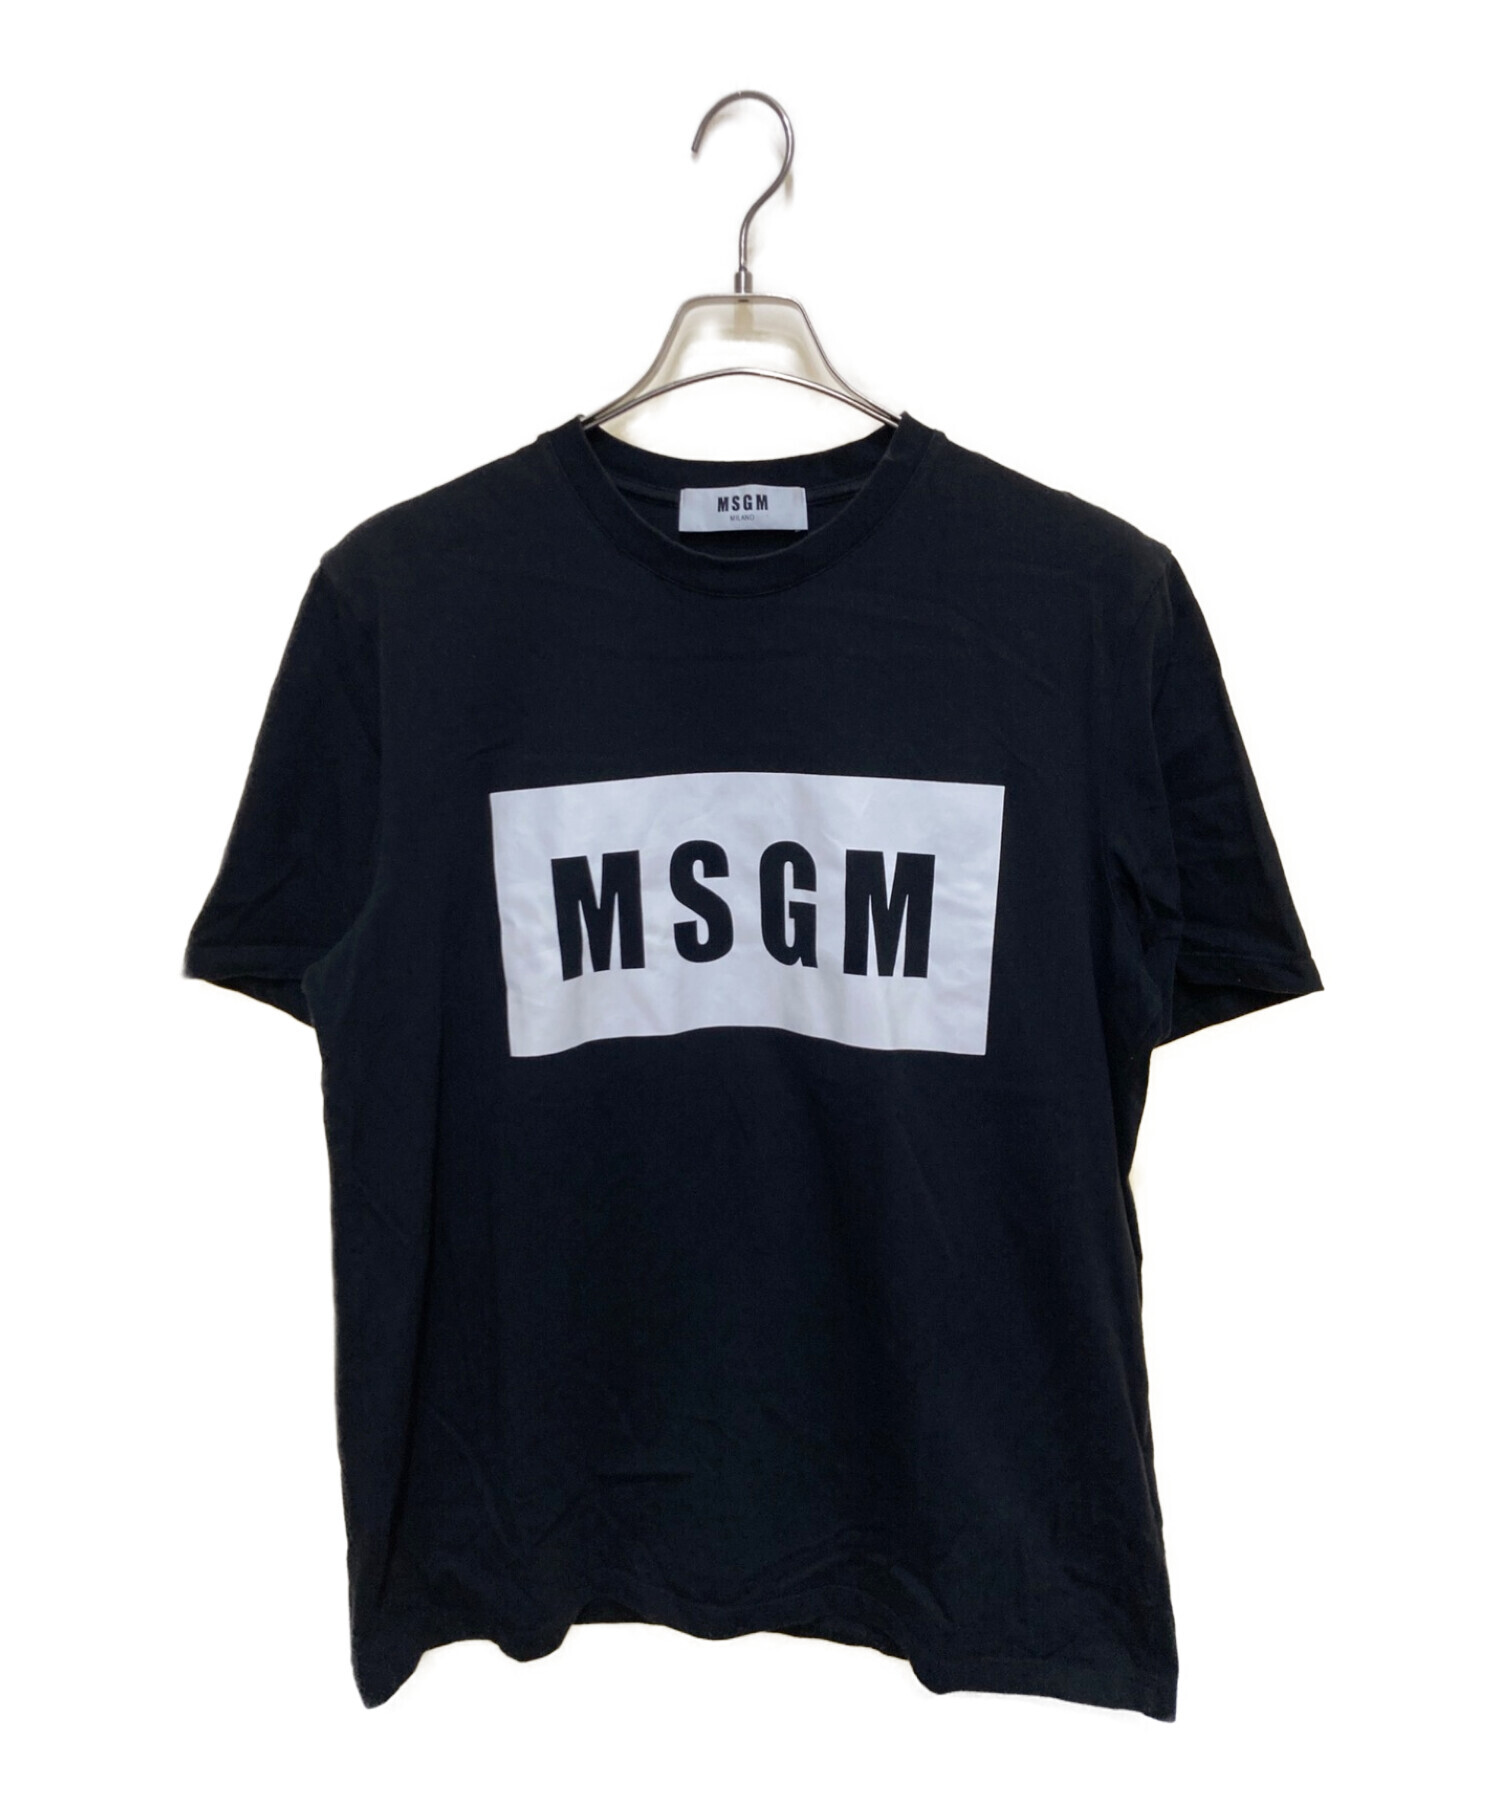 MSGM (エムエスジーエム) ロゴTシャツ ブラック サイズ:M